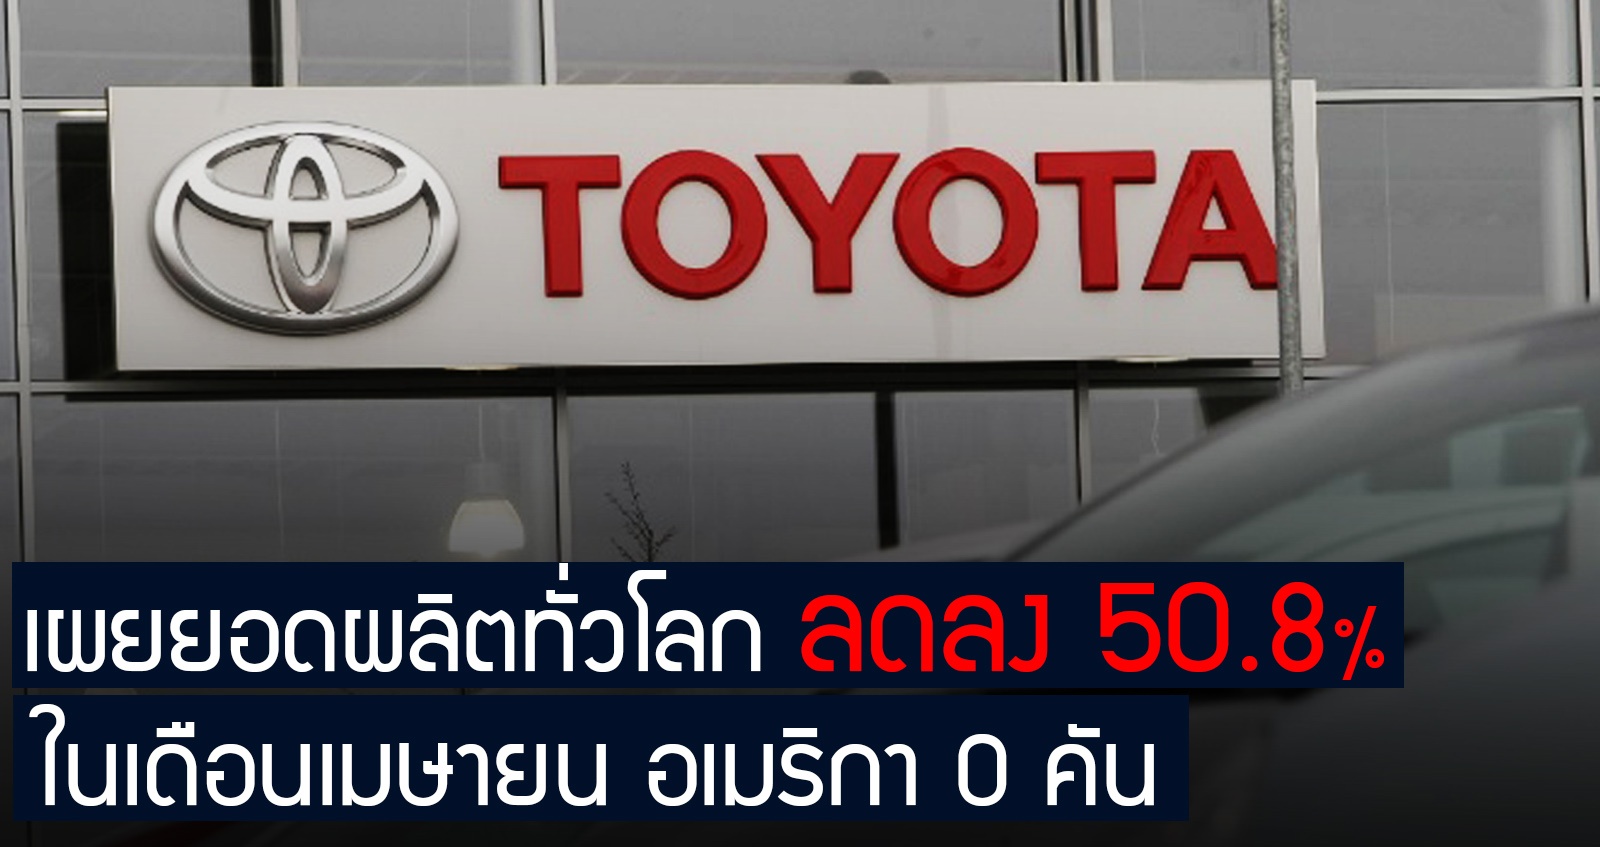 TOYOTA Motor เผยยอดผลิตลดลงทั่วโลก 50.8% ในเดือนเมษายน